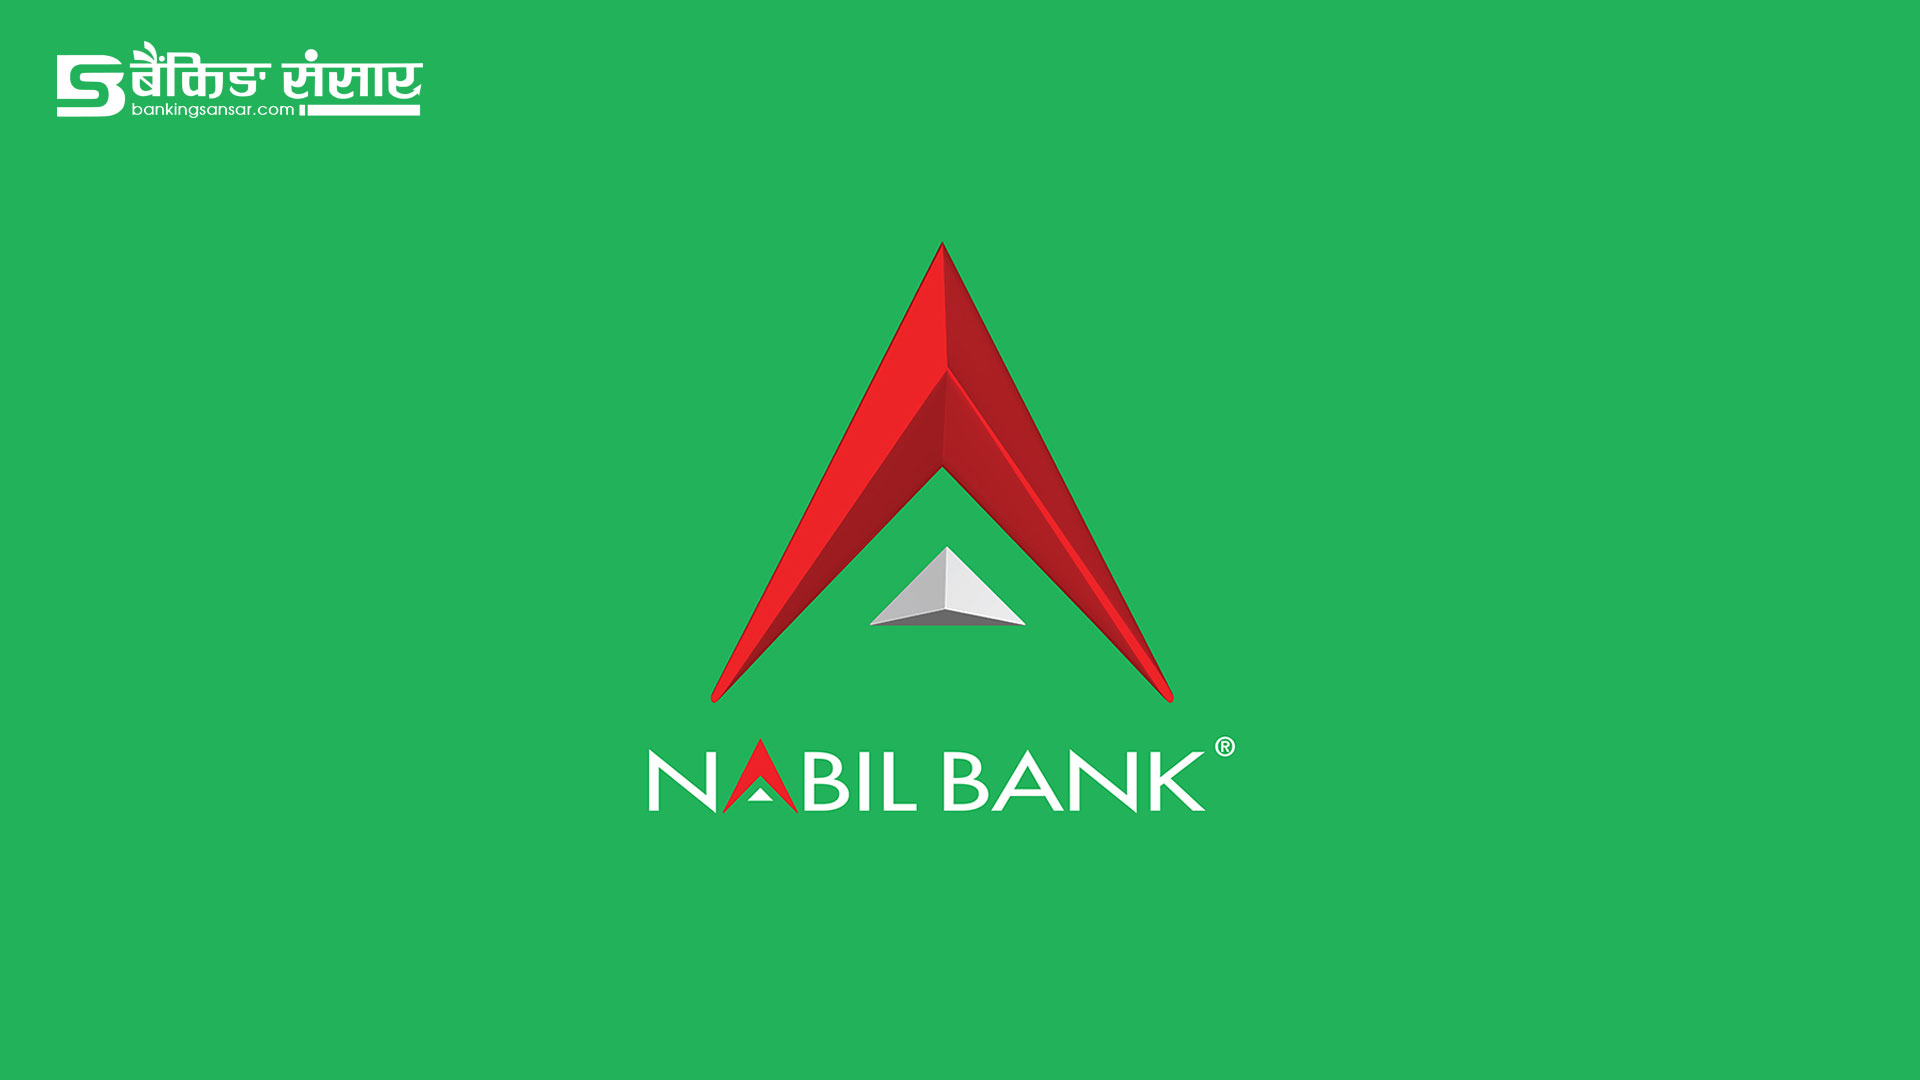 नबिल बैंक लुट्ने ३ नेपाली र १ भारतीय नागरिक पक्राउ, पक्राउ परेकामध्ये एक ‘पटके चोर’, बैंककै कमजोरी देखियो 